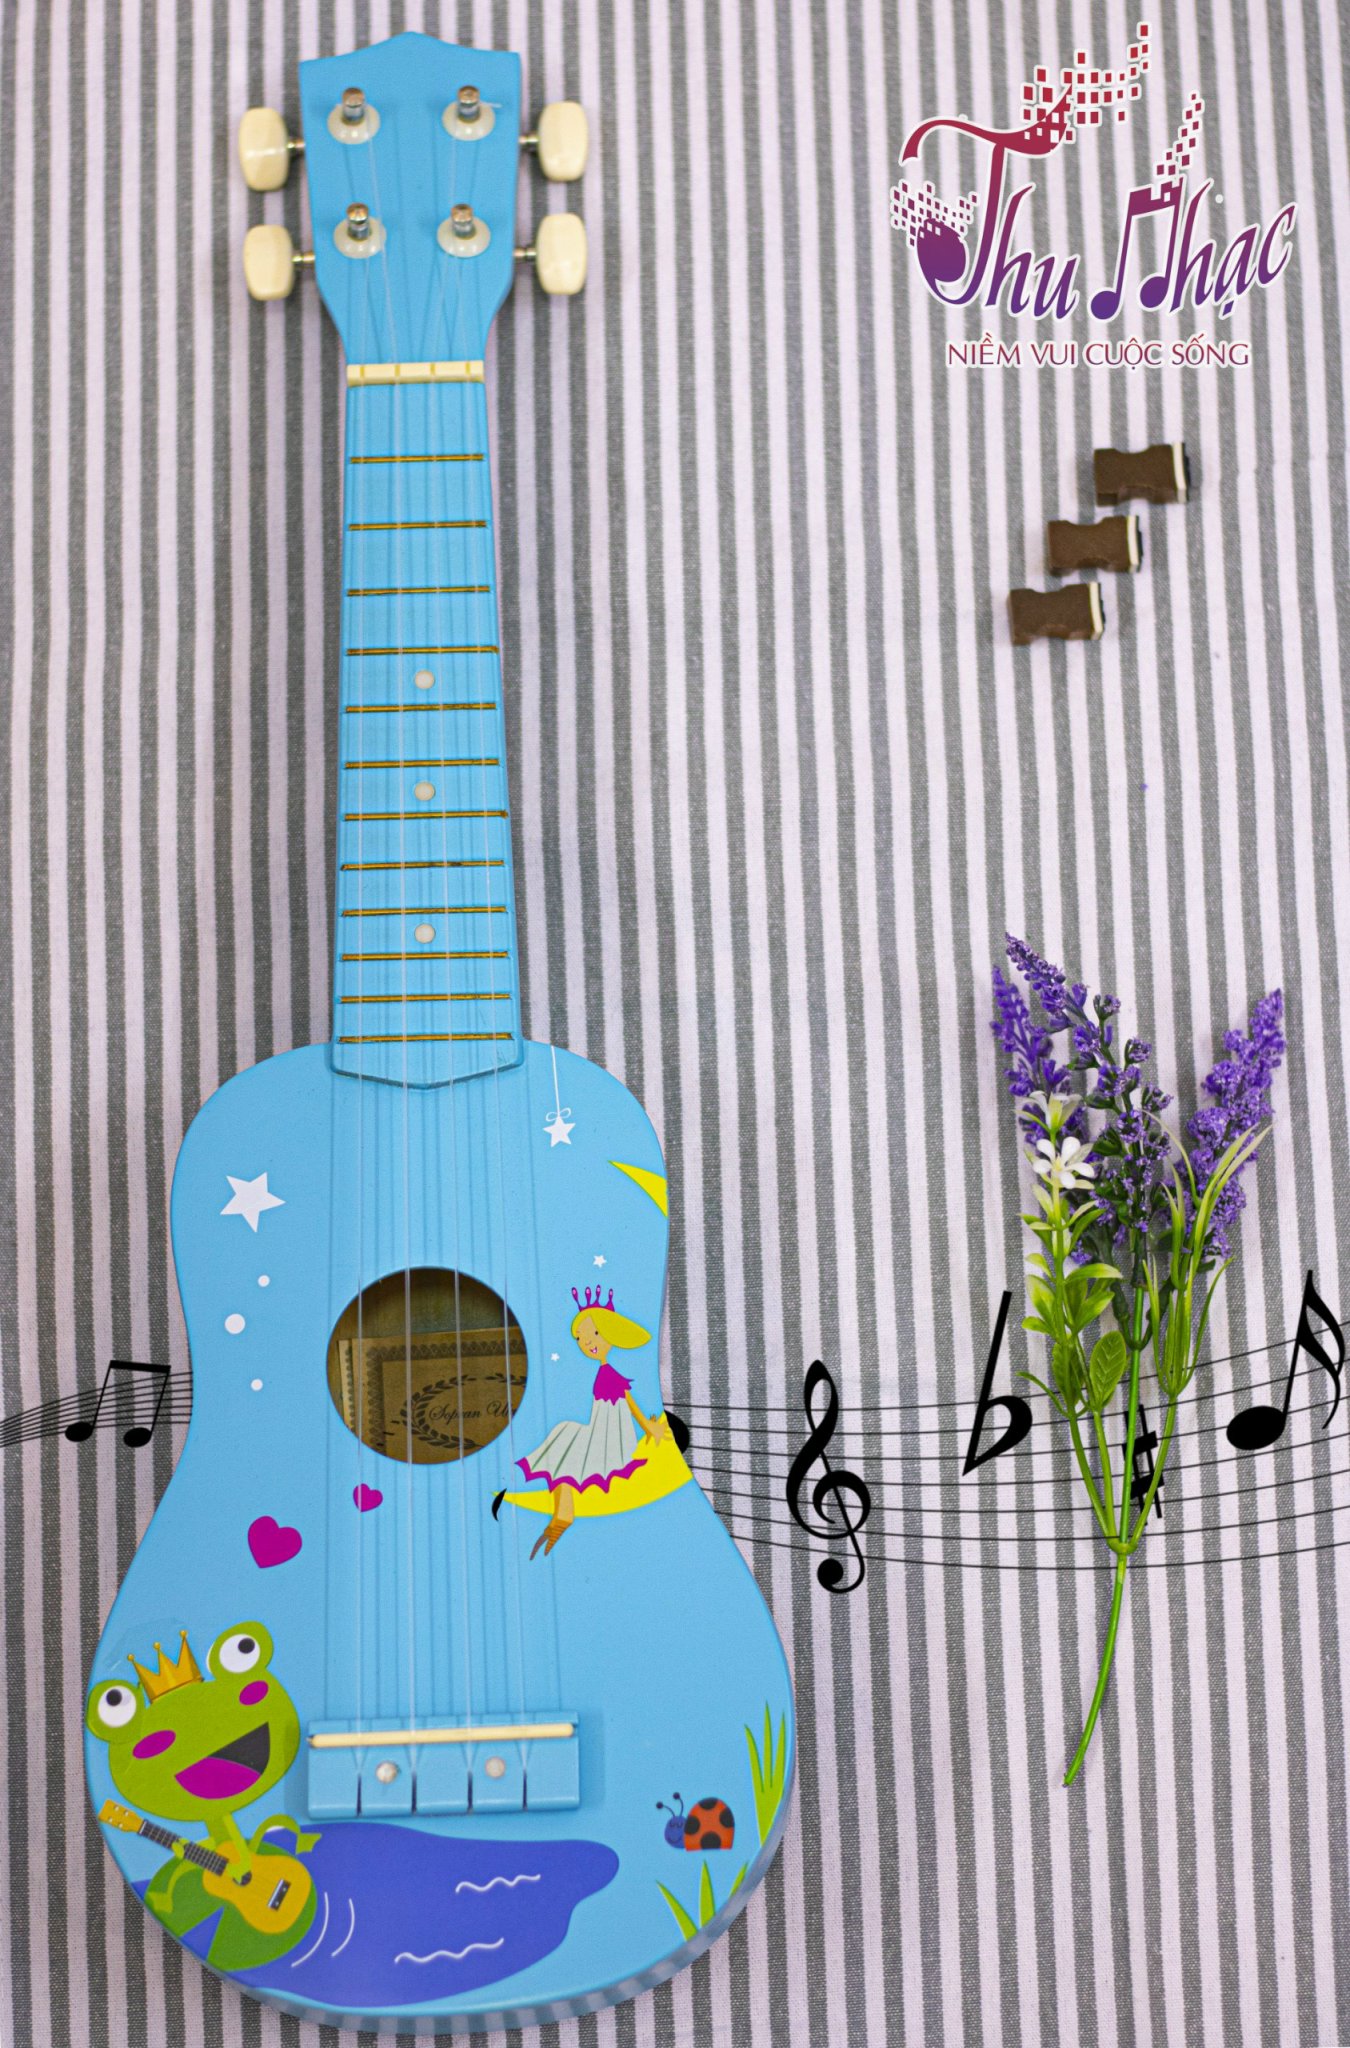 Đàn ukulele màu xanh họa tiết ếch con